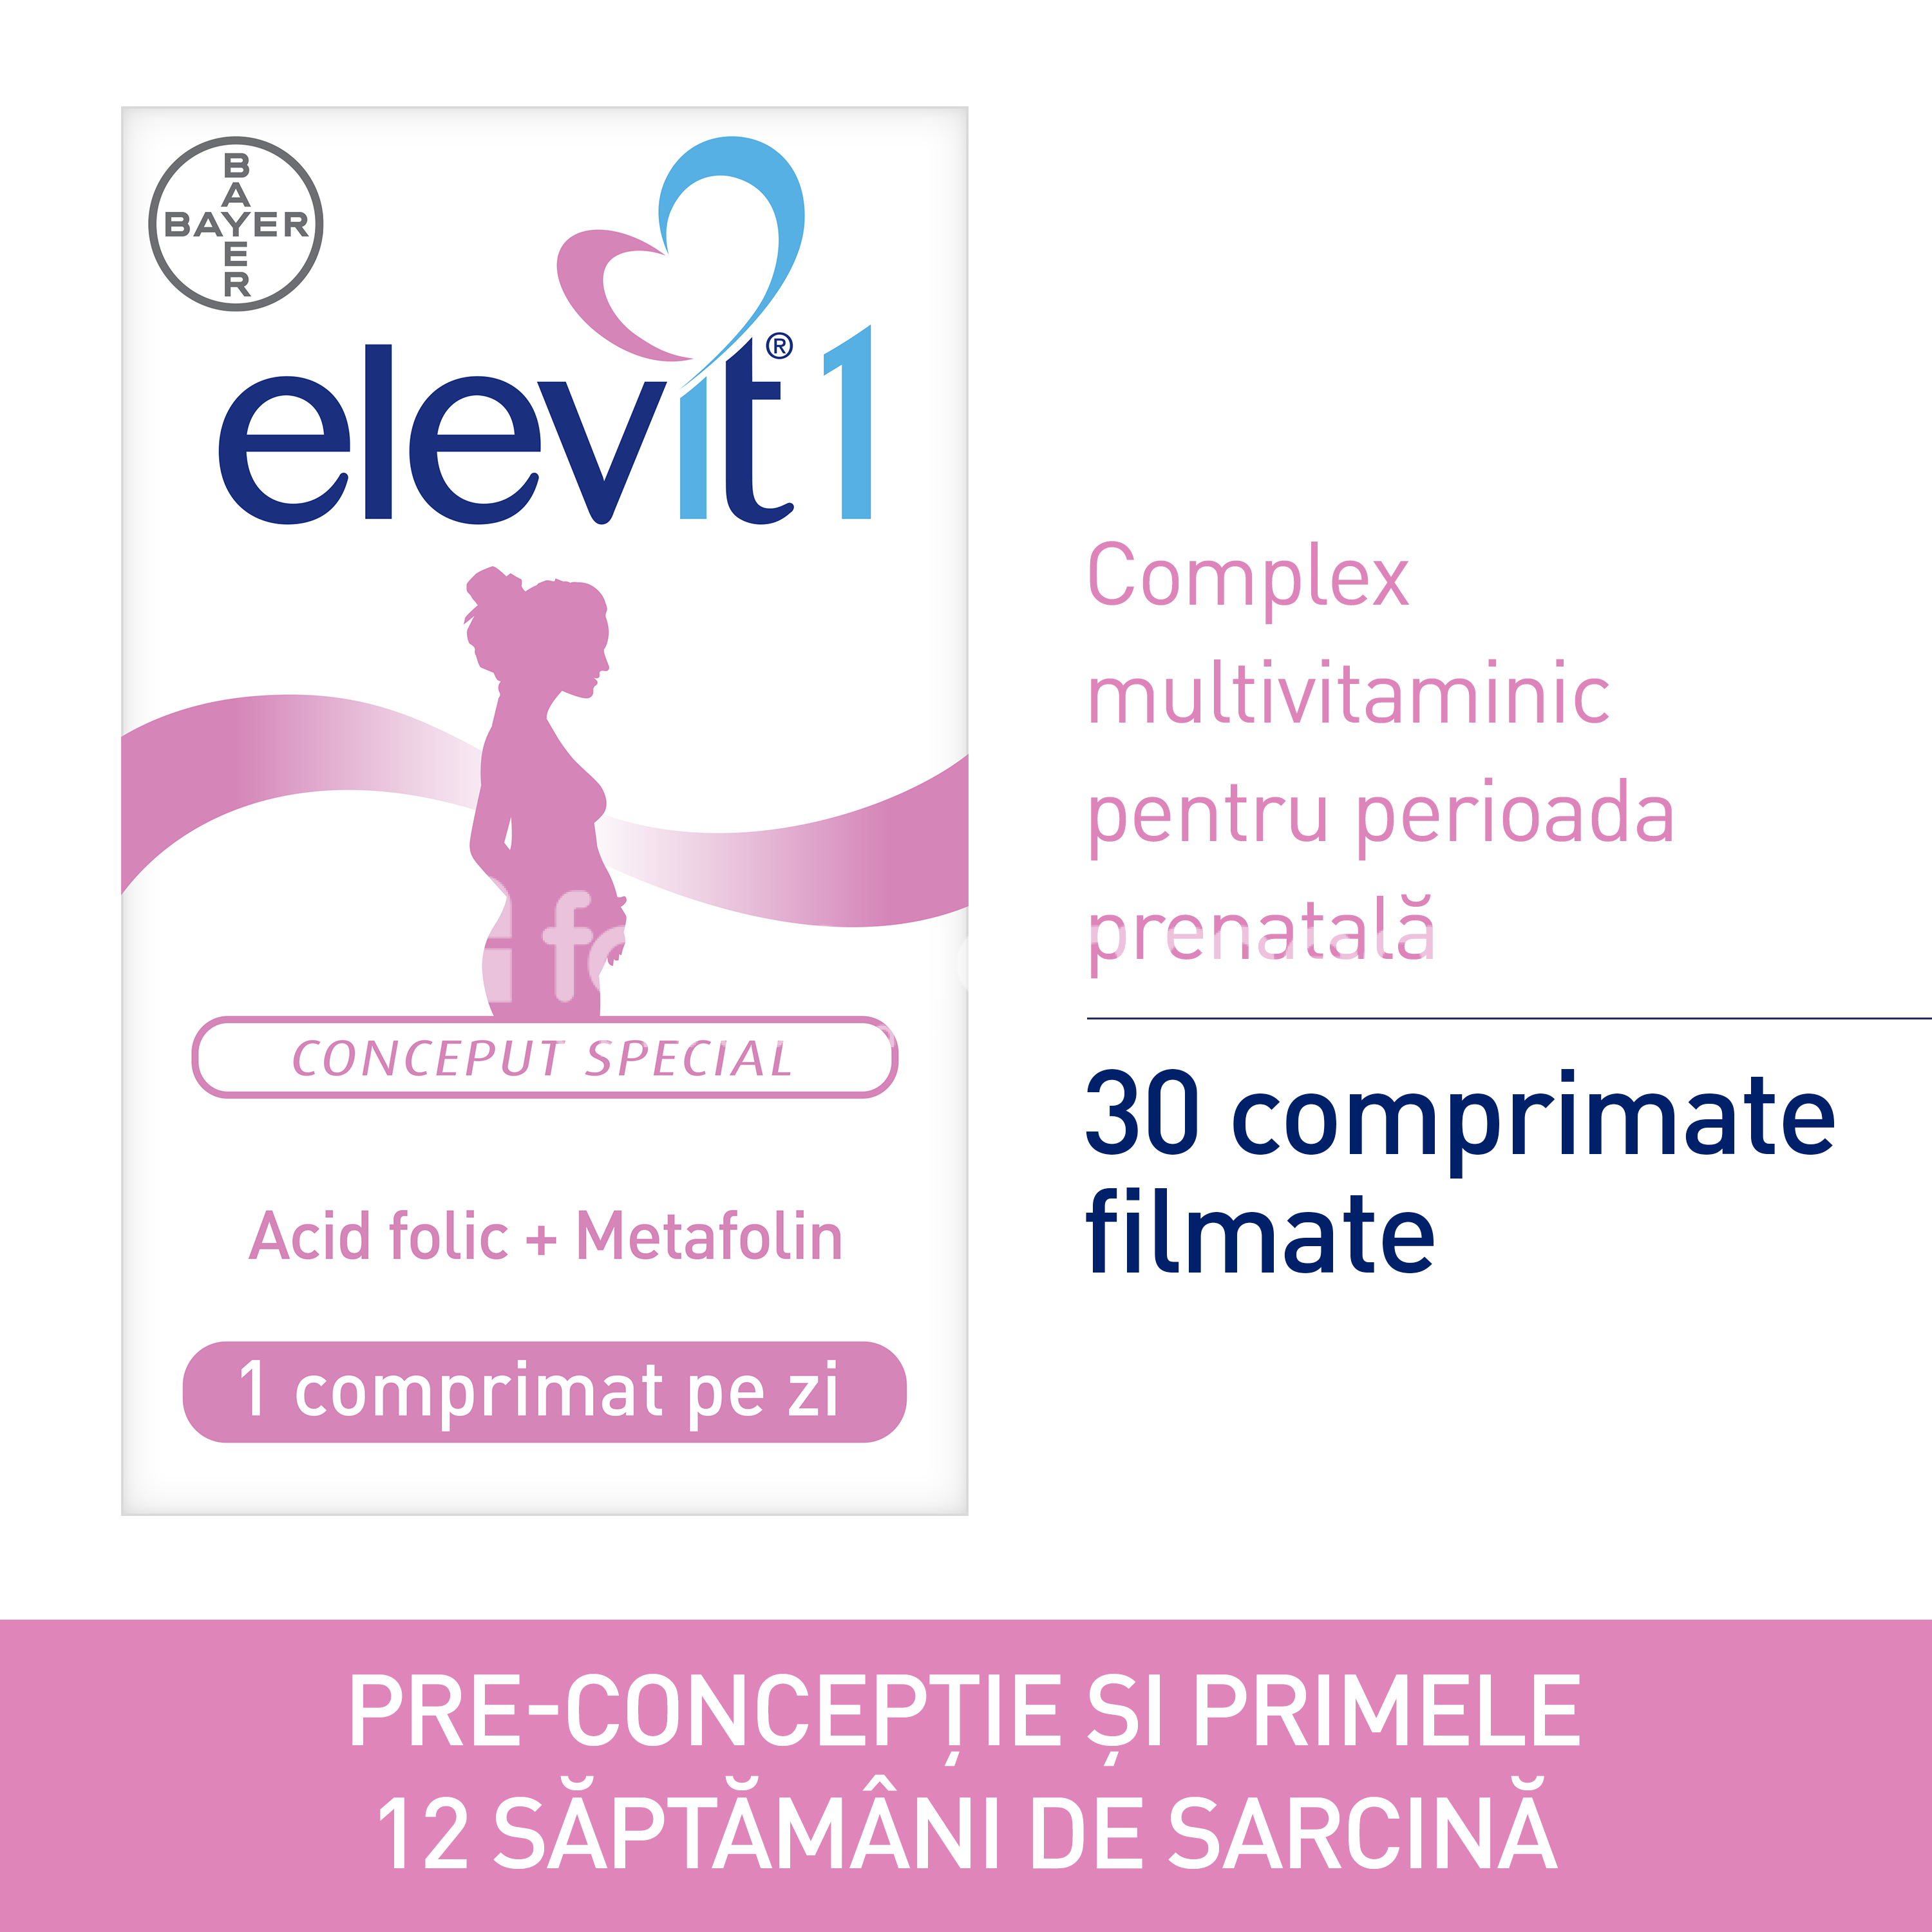 Vitamine și minerale femei însărcinate - Elevit 1 Complex multivitaminic pentru perioada prenatala, 30 comprimate filmate, Bayer, farmaciamea.ro